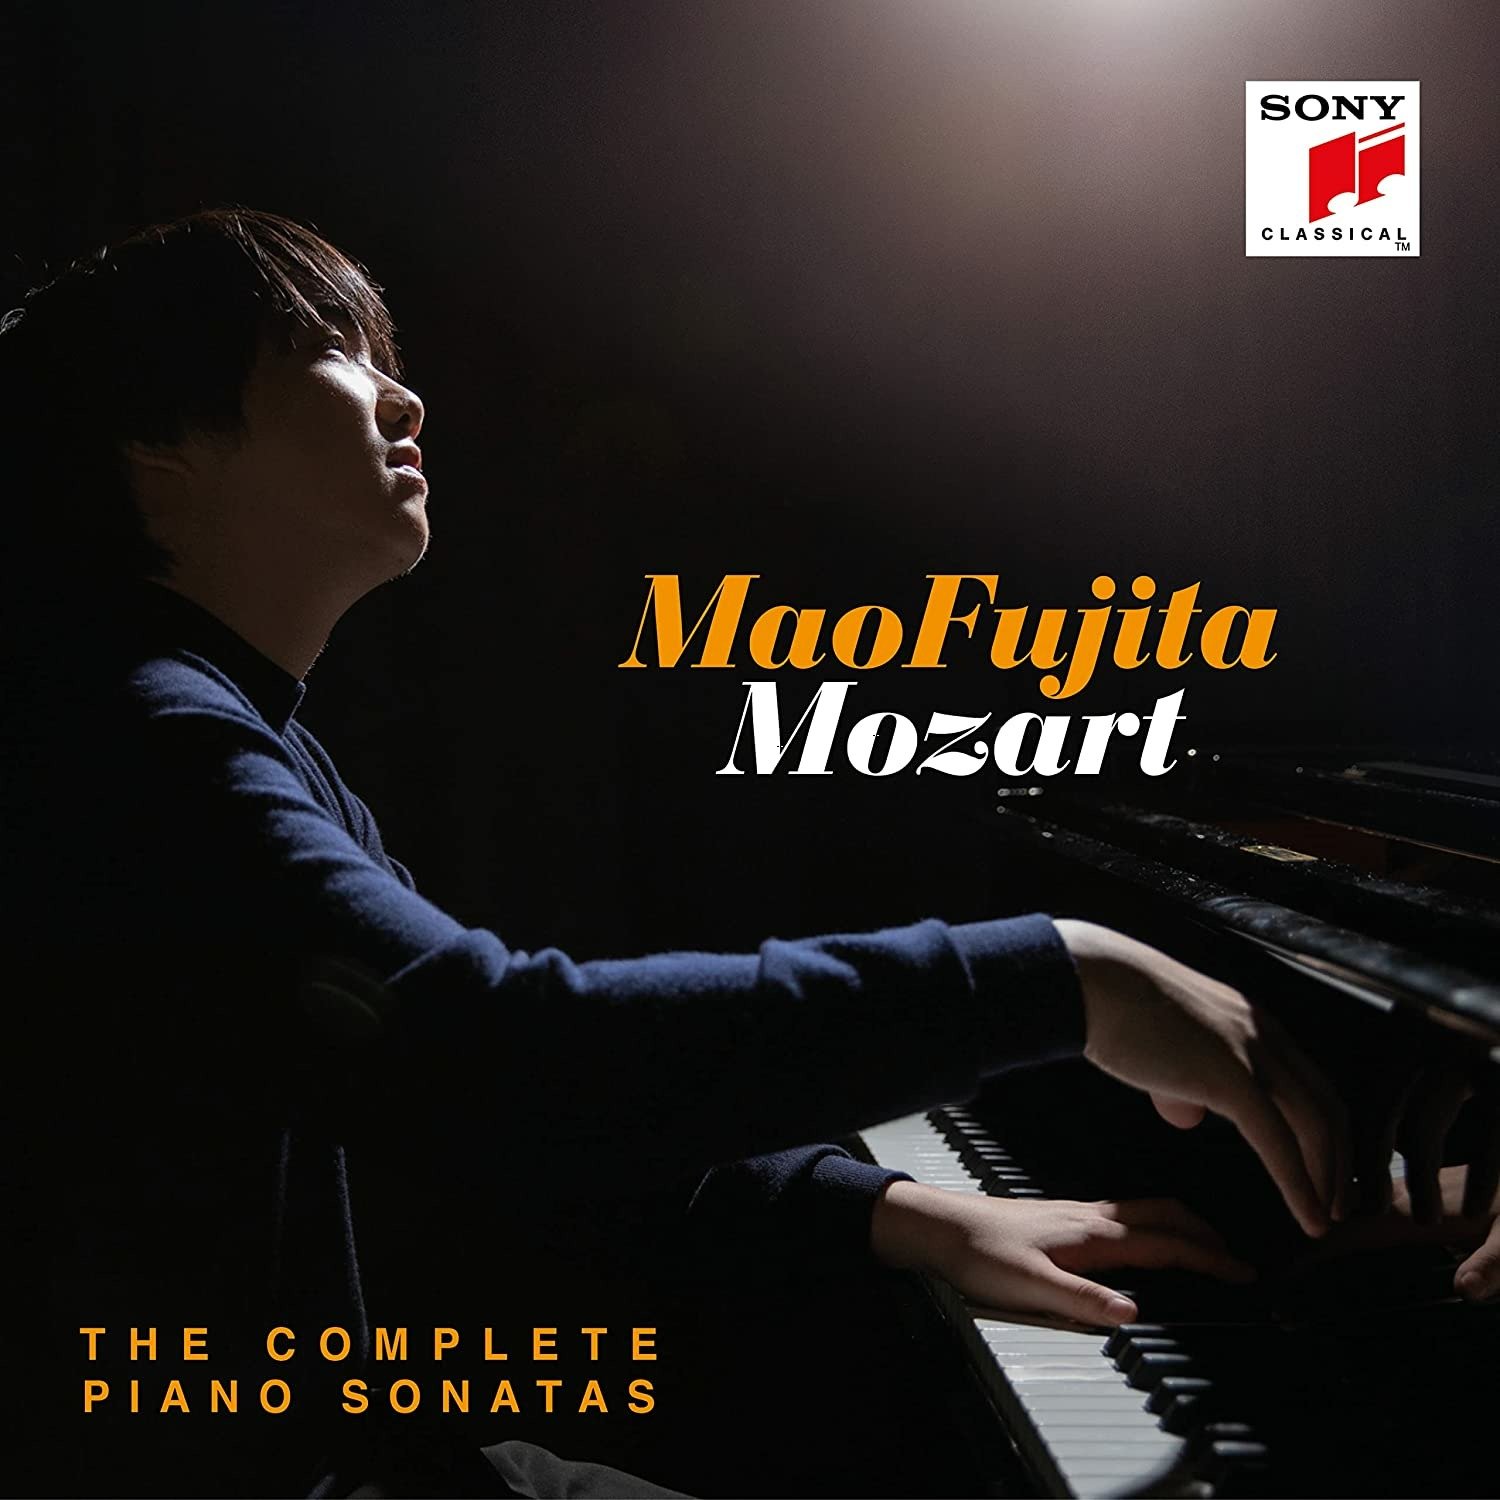 The Complete Piano Sonatas | Mao Fujita carturesti.ro poza noua